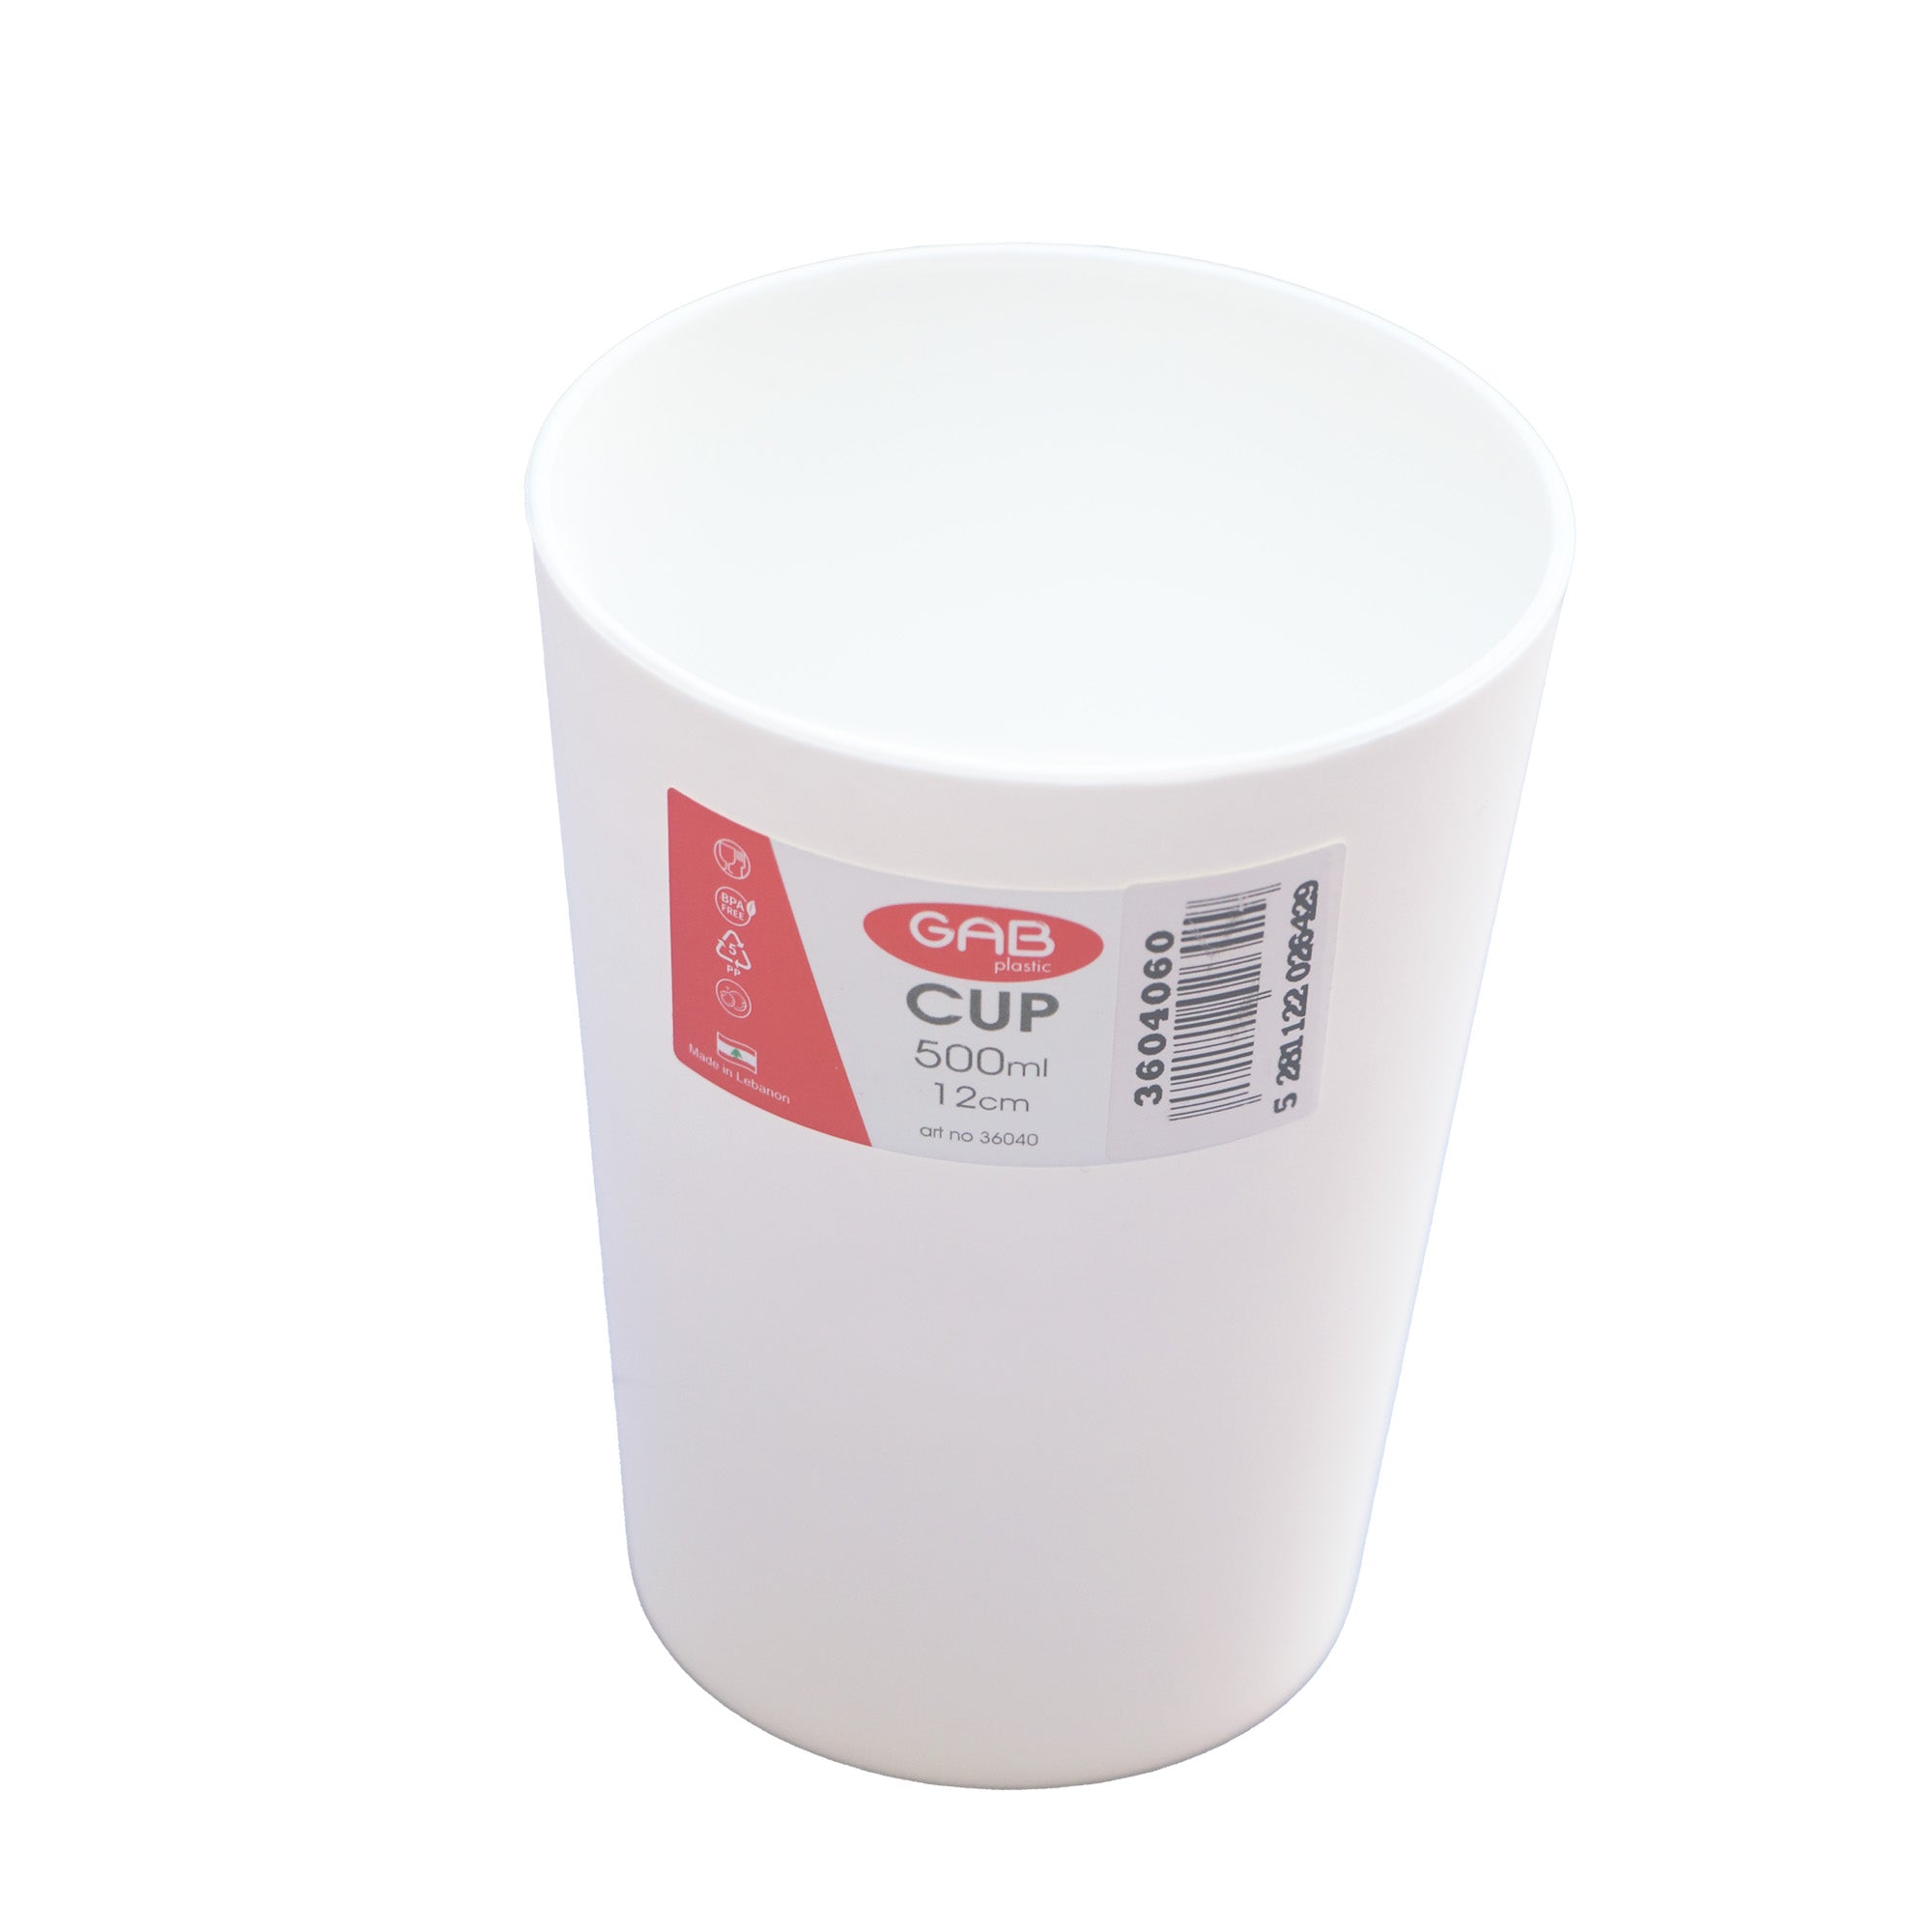 Transparent Reusable Plastic Cups